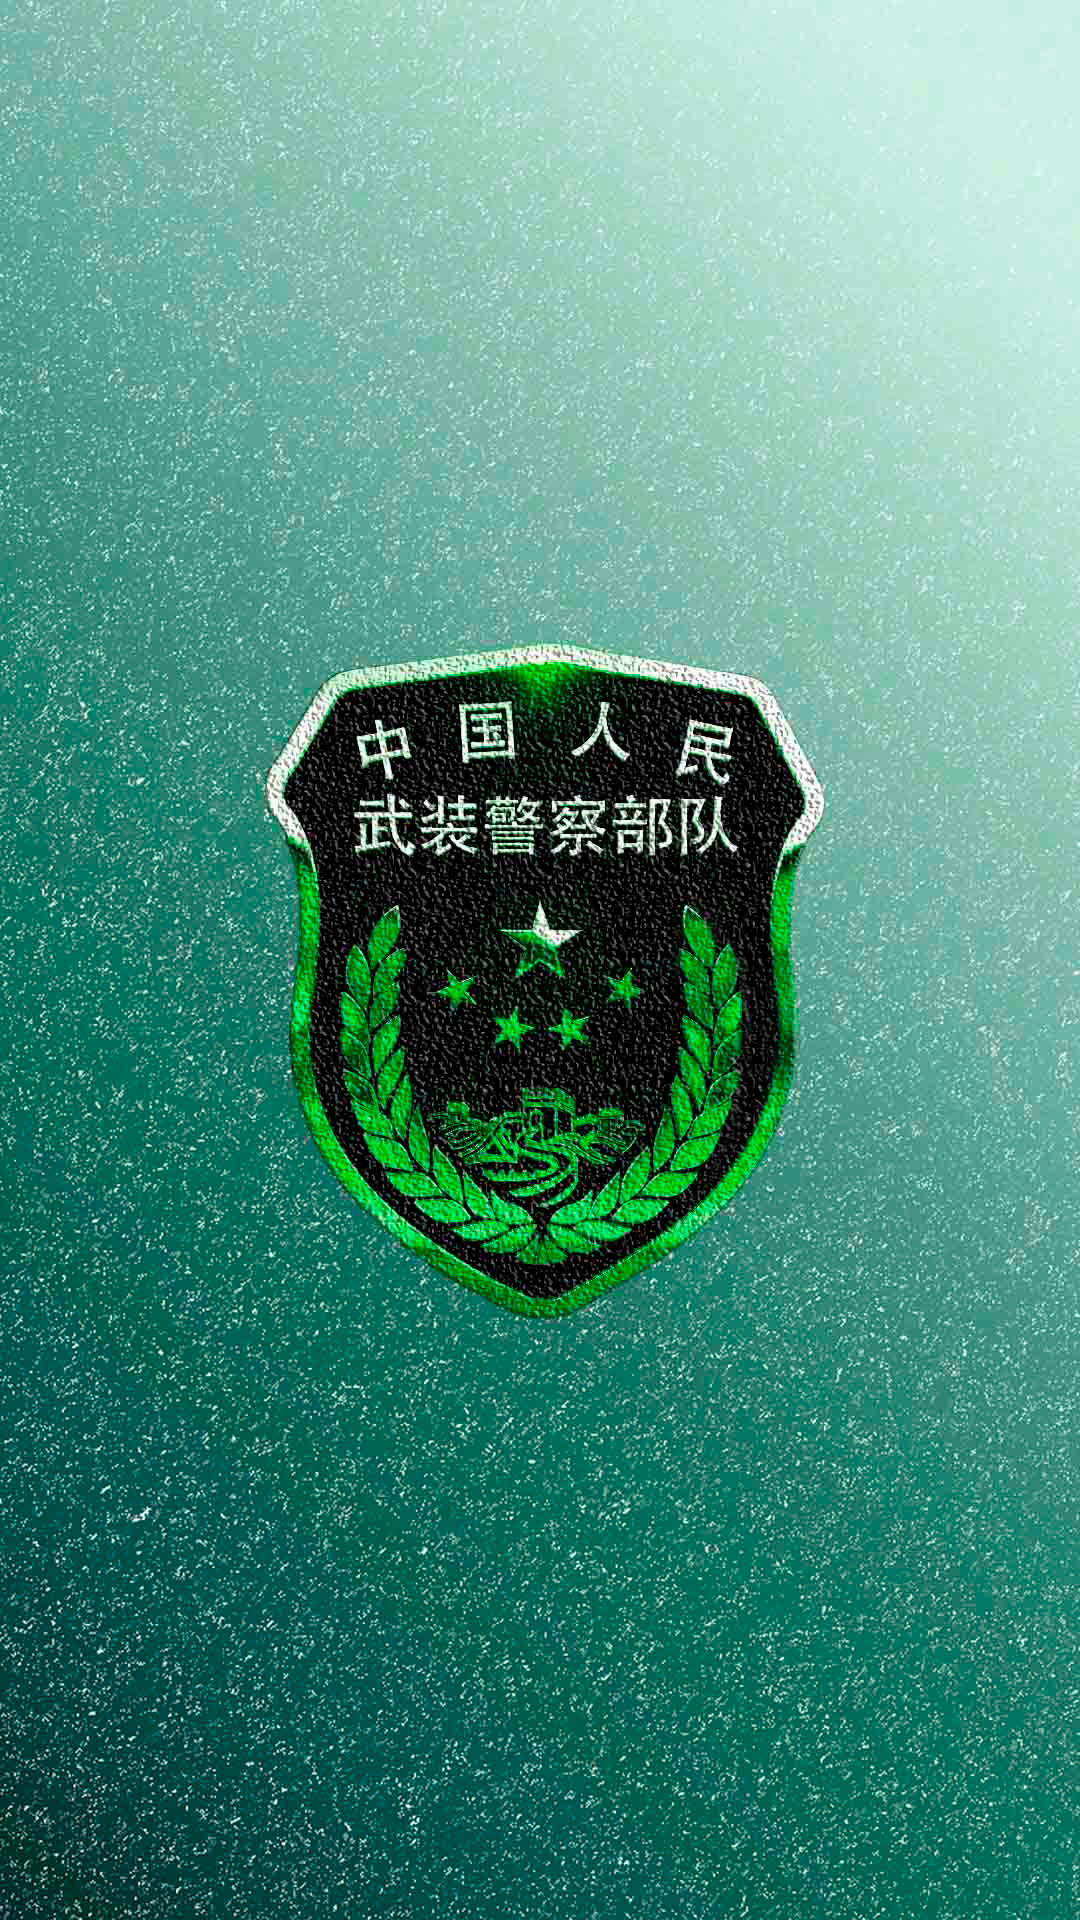 中国人民武装警察部队徽章图案